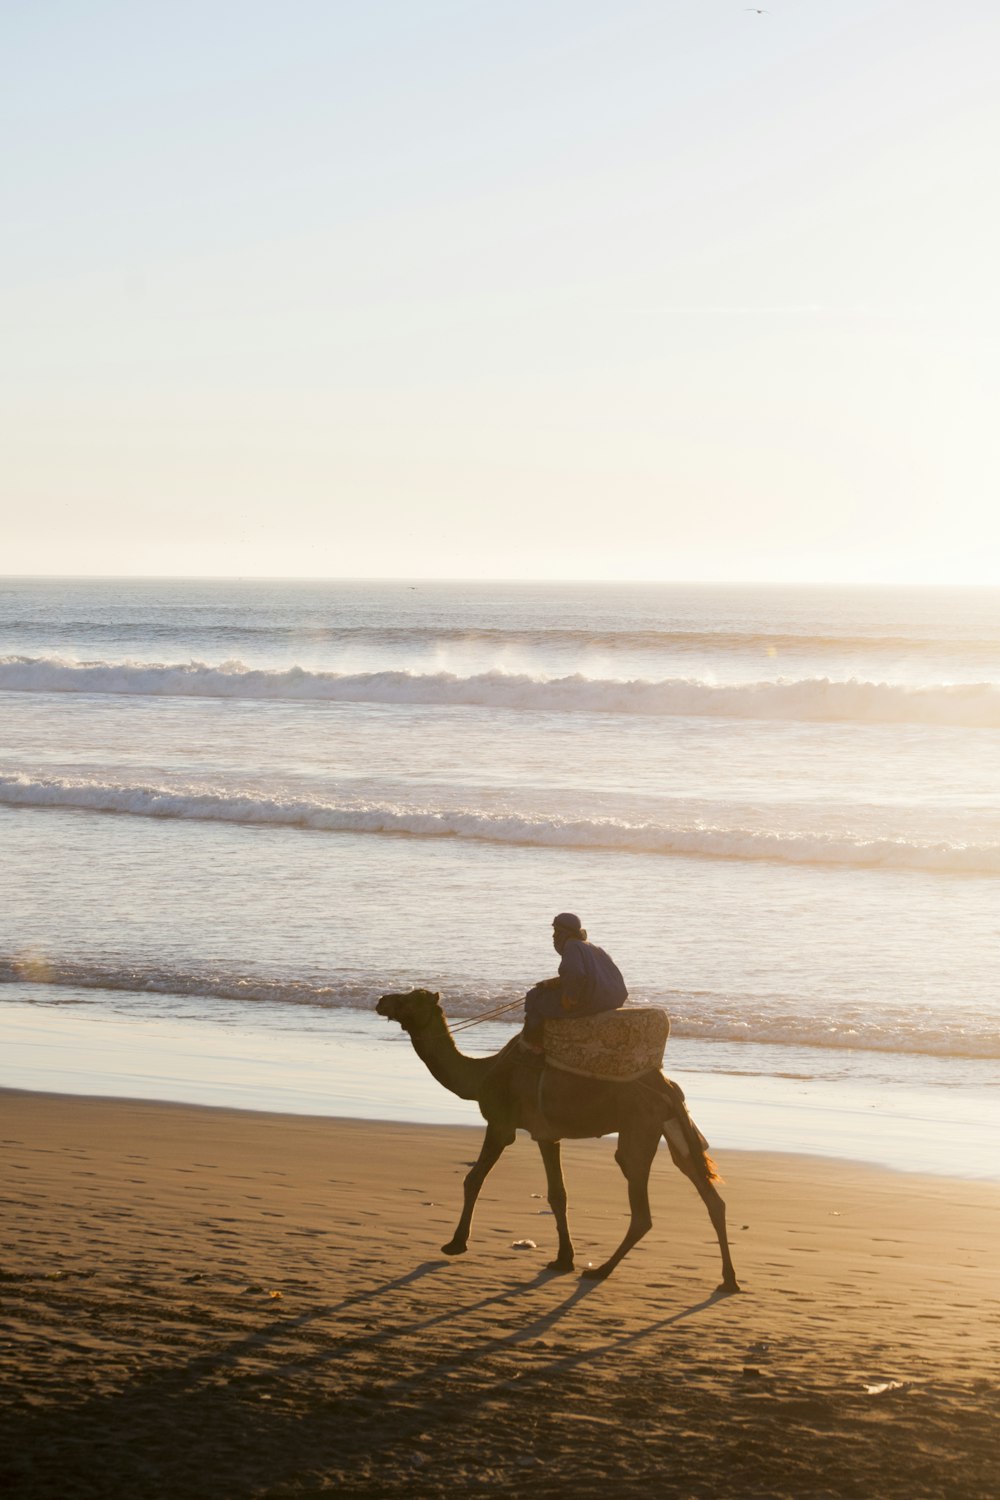 pessoa montando um camelo ao lado do corpo de água durante o diaitme